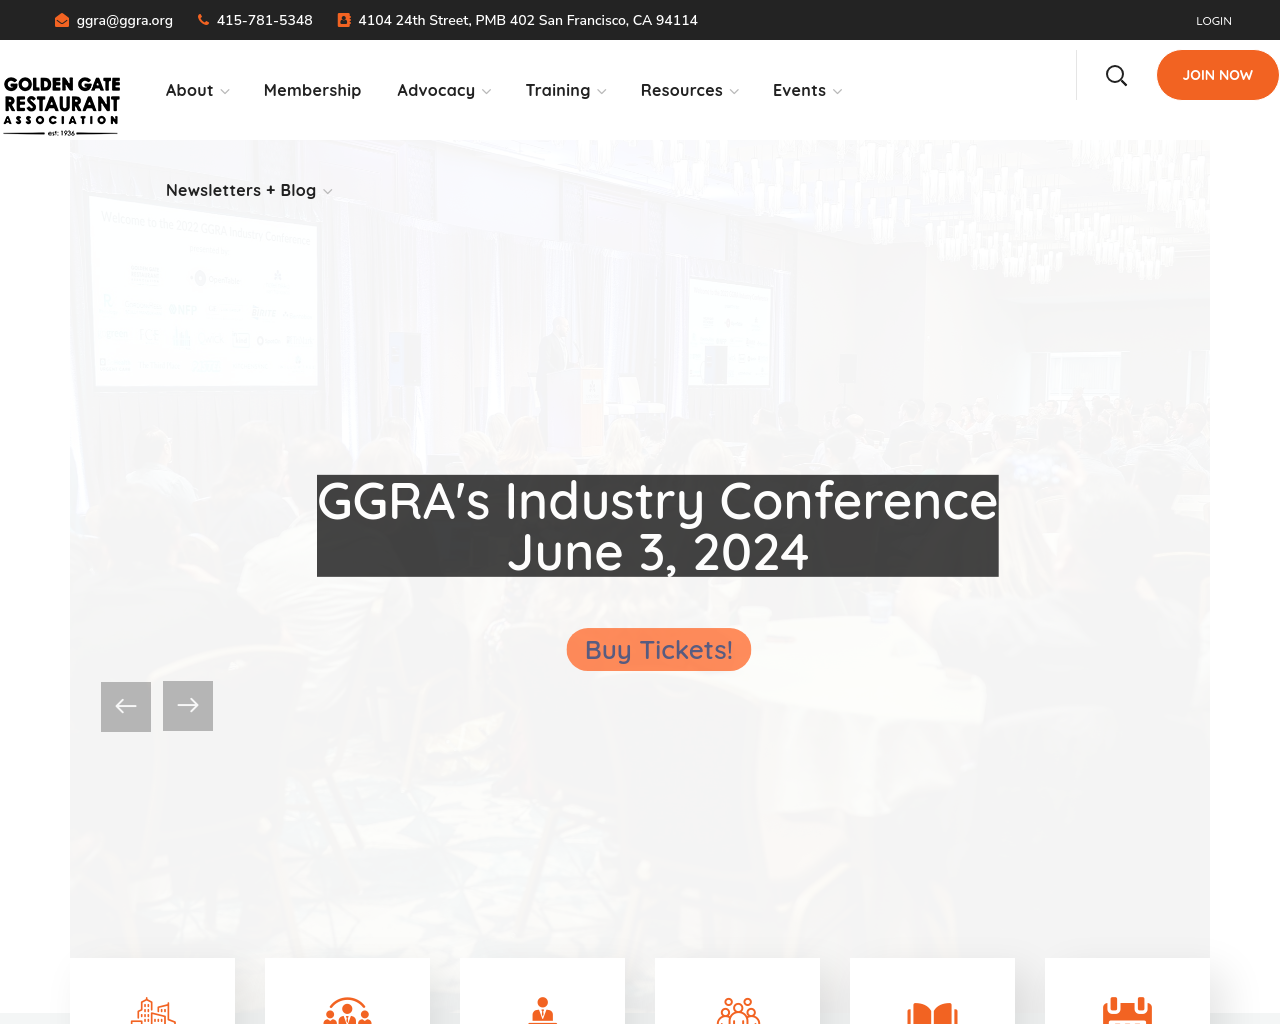 ggra.org